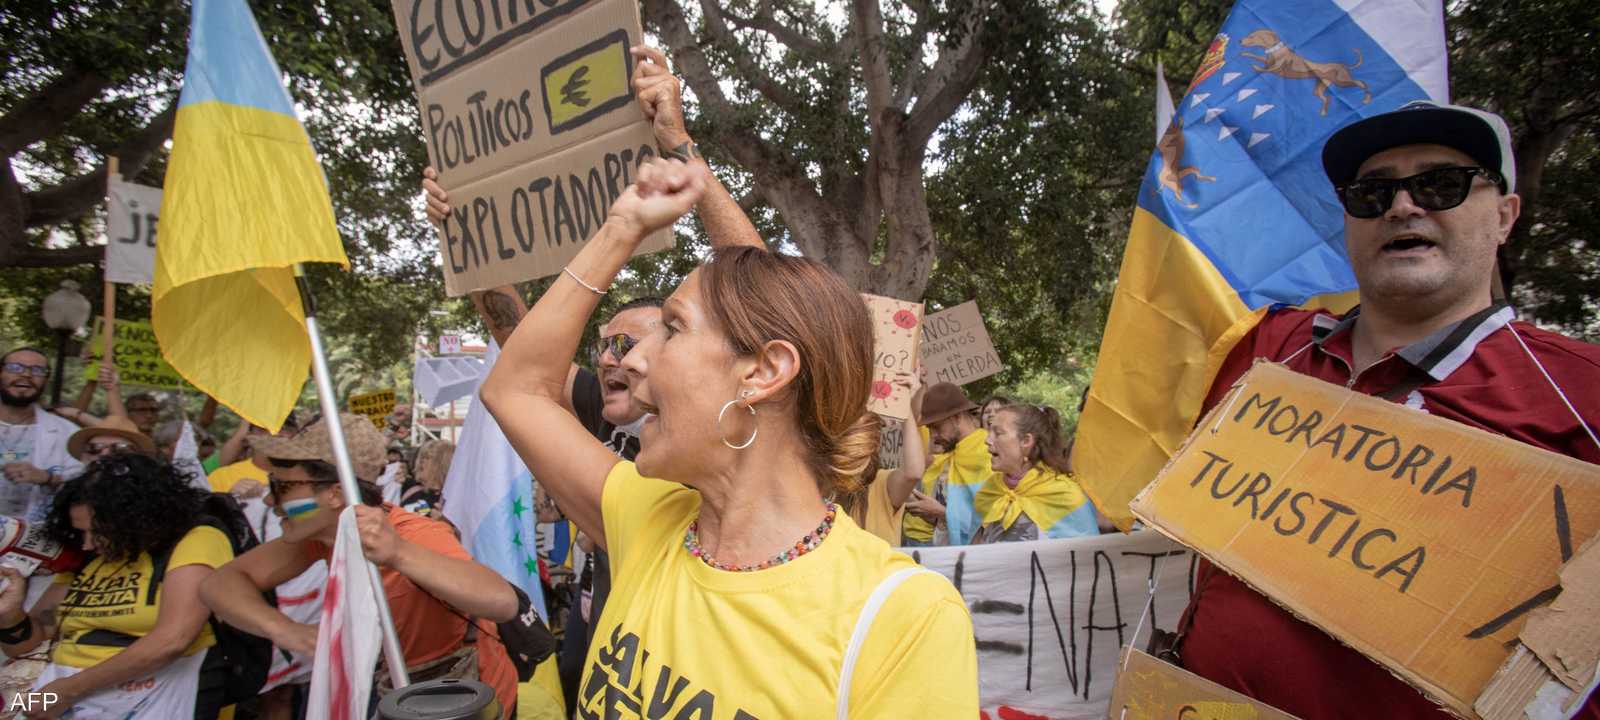 تظاهرة في جزر الكناري الإسبانية احتجاجا على السياحة المفرطة